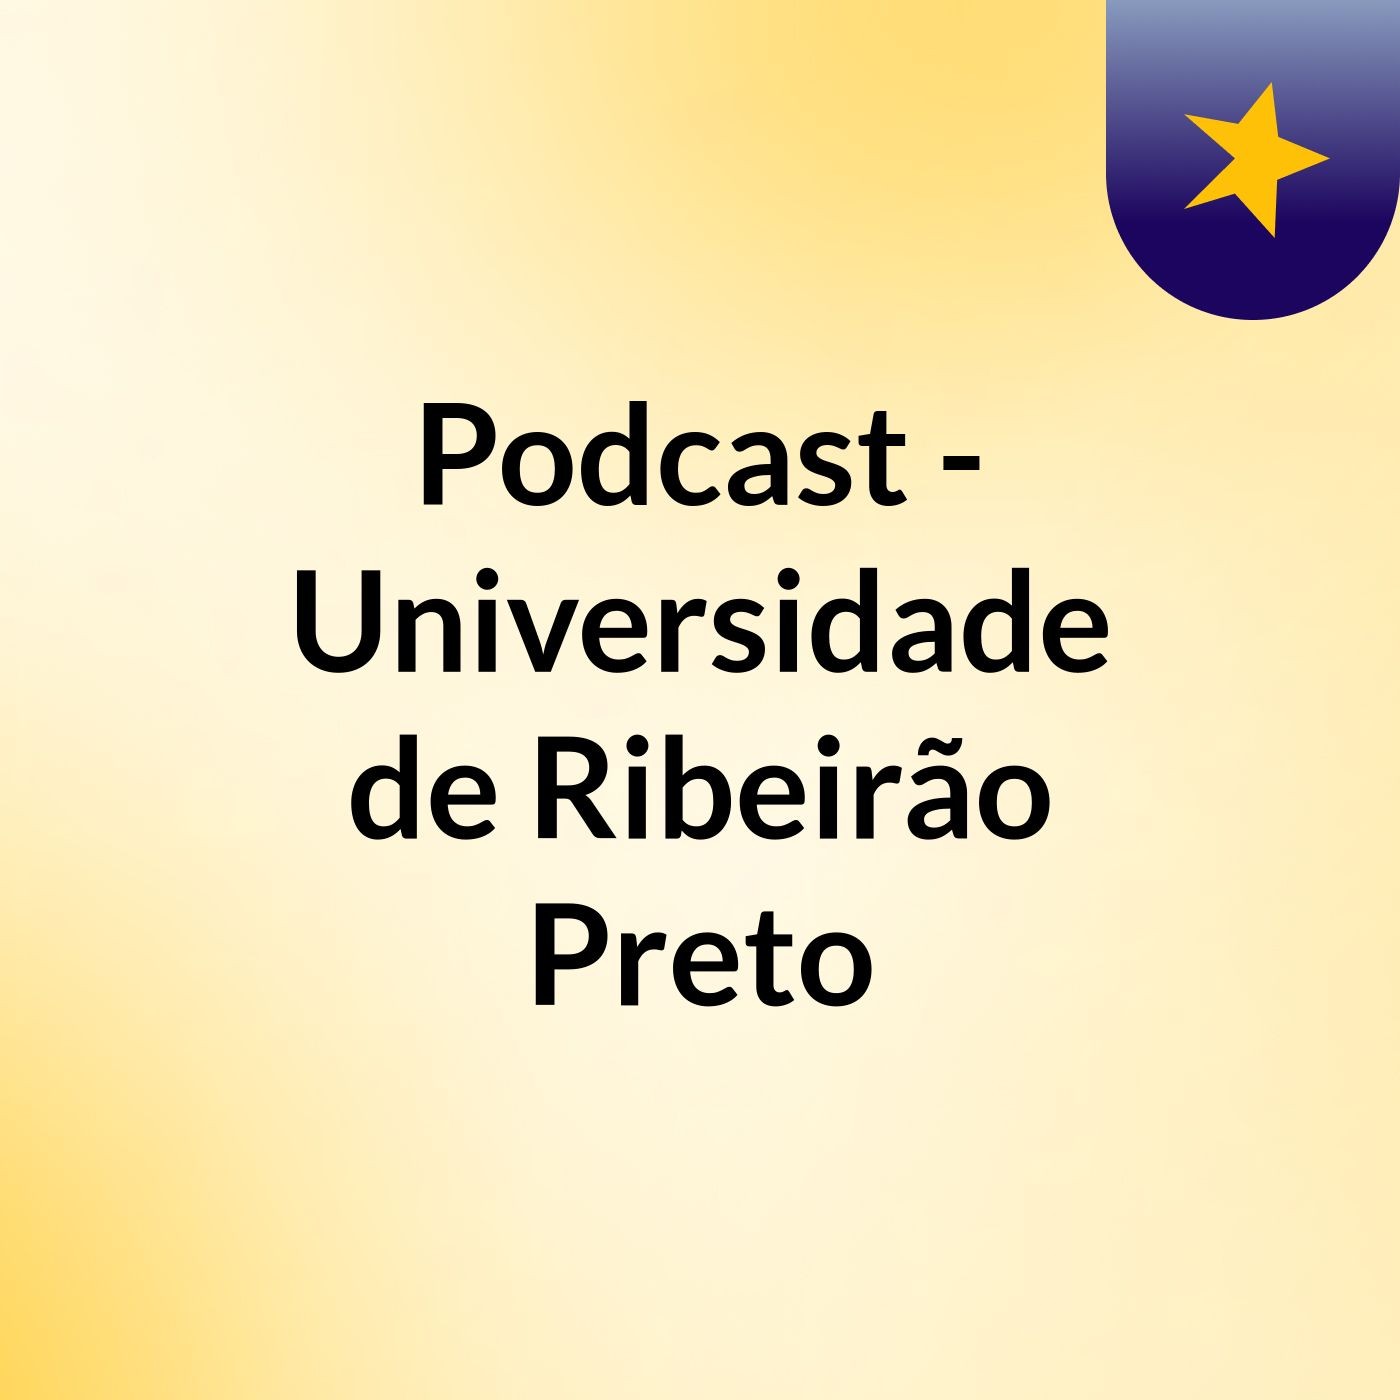 Podcast - Universidade de Ribeirão Preto